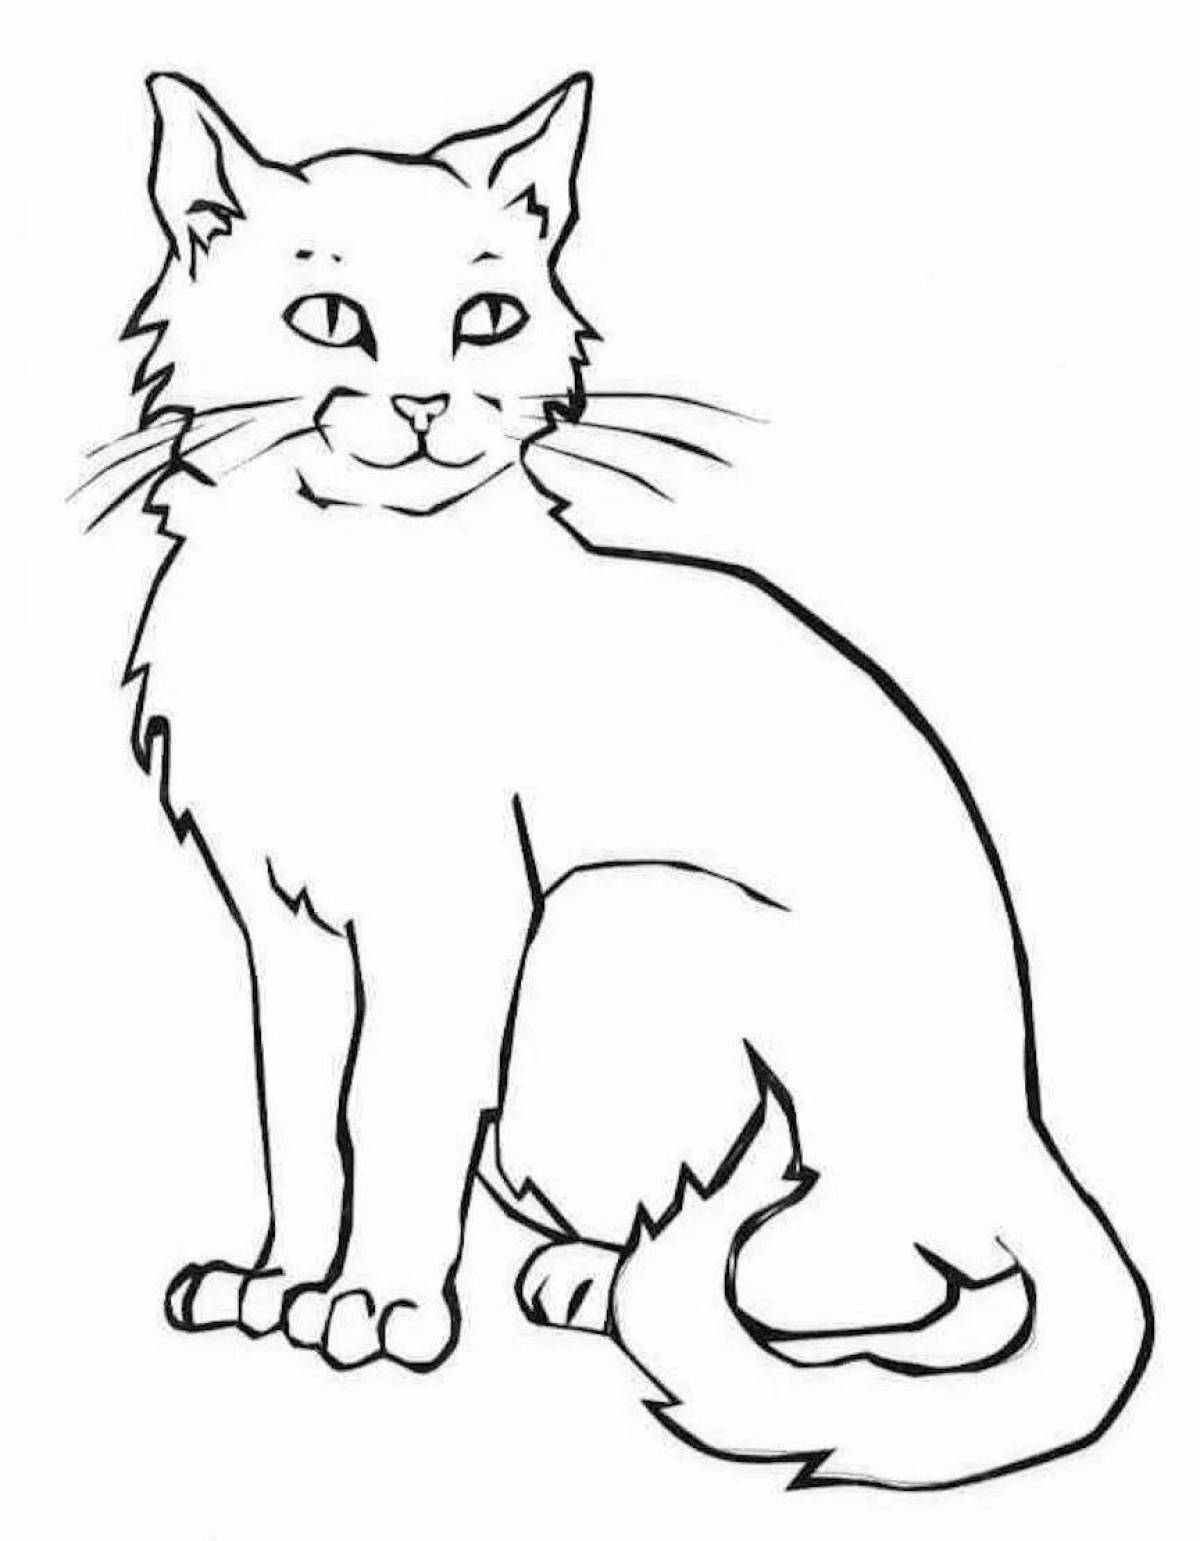 Любопытная черно-белая раскраска кота